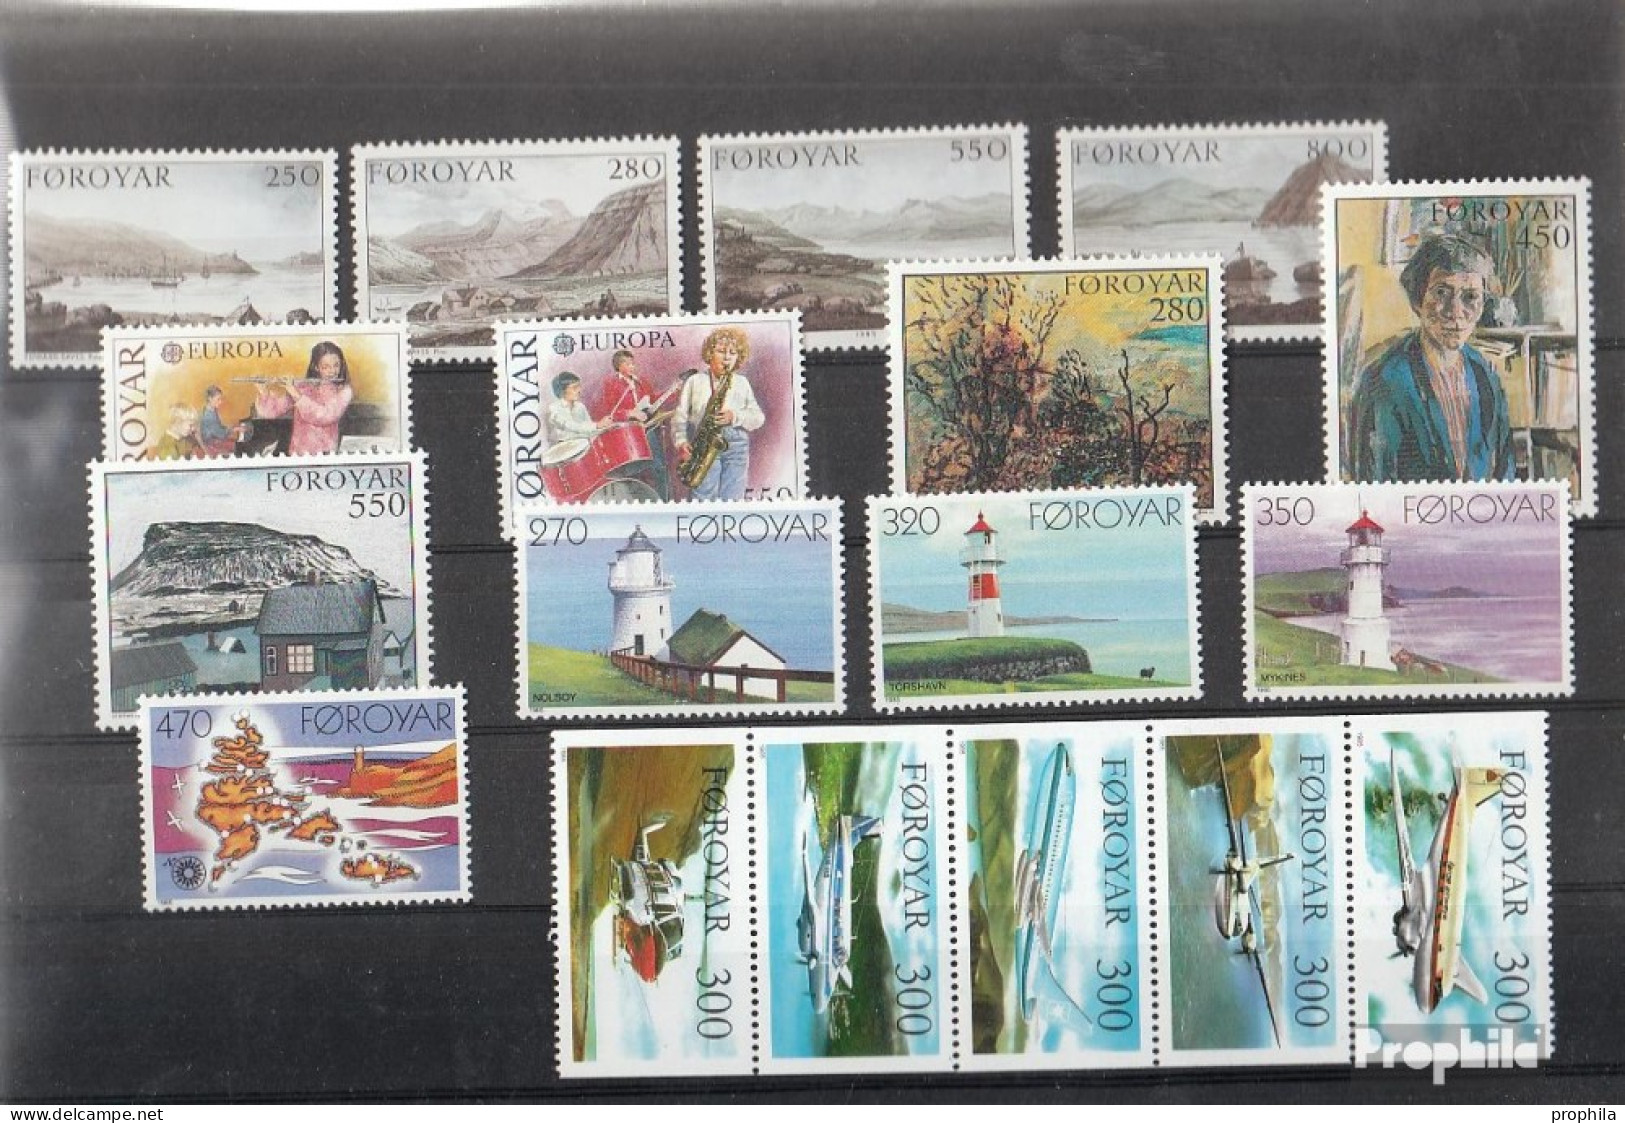 Dänemark - Färöer 1985 Postfrisch Kompletter Jahrgang In Sauberer Erhaltung - Full Years